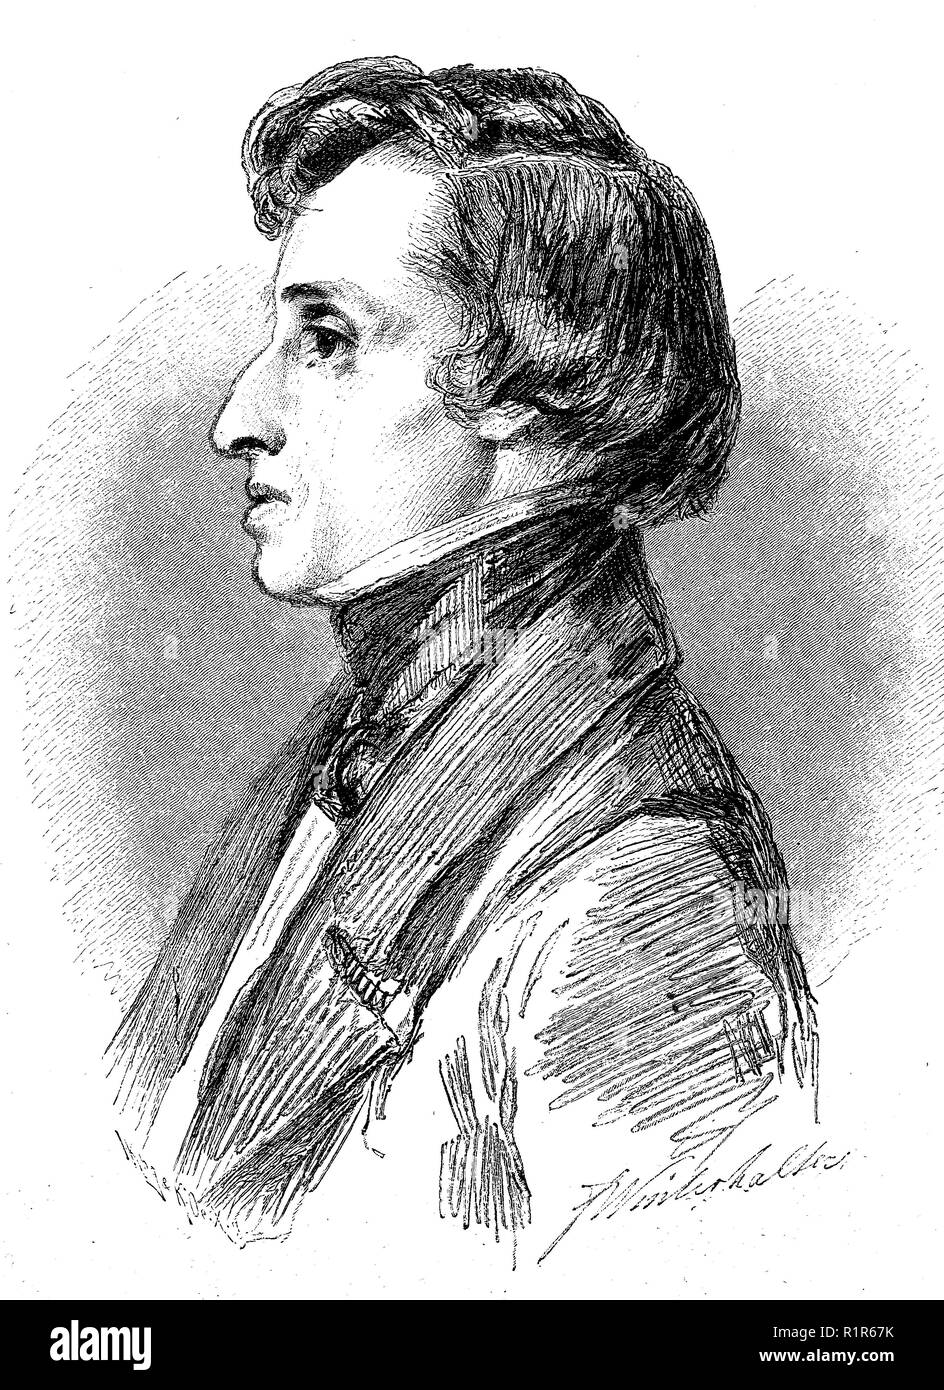 Digital verbesserte Reproduktion, Frederic Français ois Chopin, 1810 - 1849, ein polnischer Komponist und virtuoser Pianist der romantischen Epoche, original Drucken aus dem Jahr 1880 Stockfoto